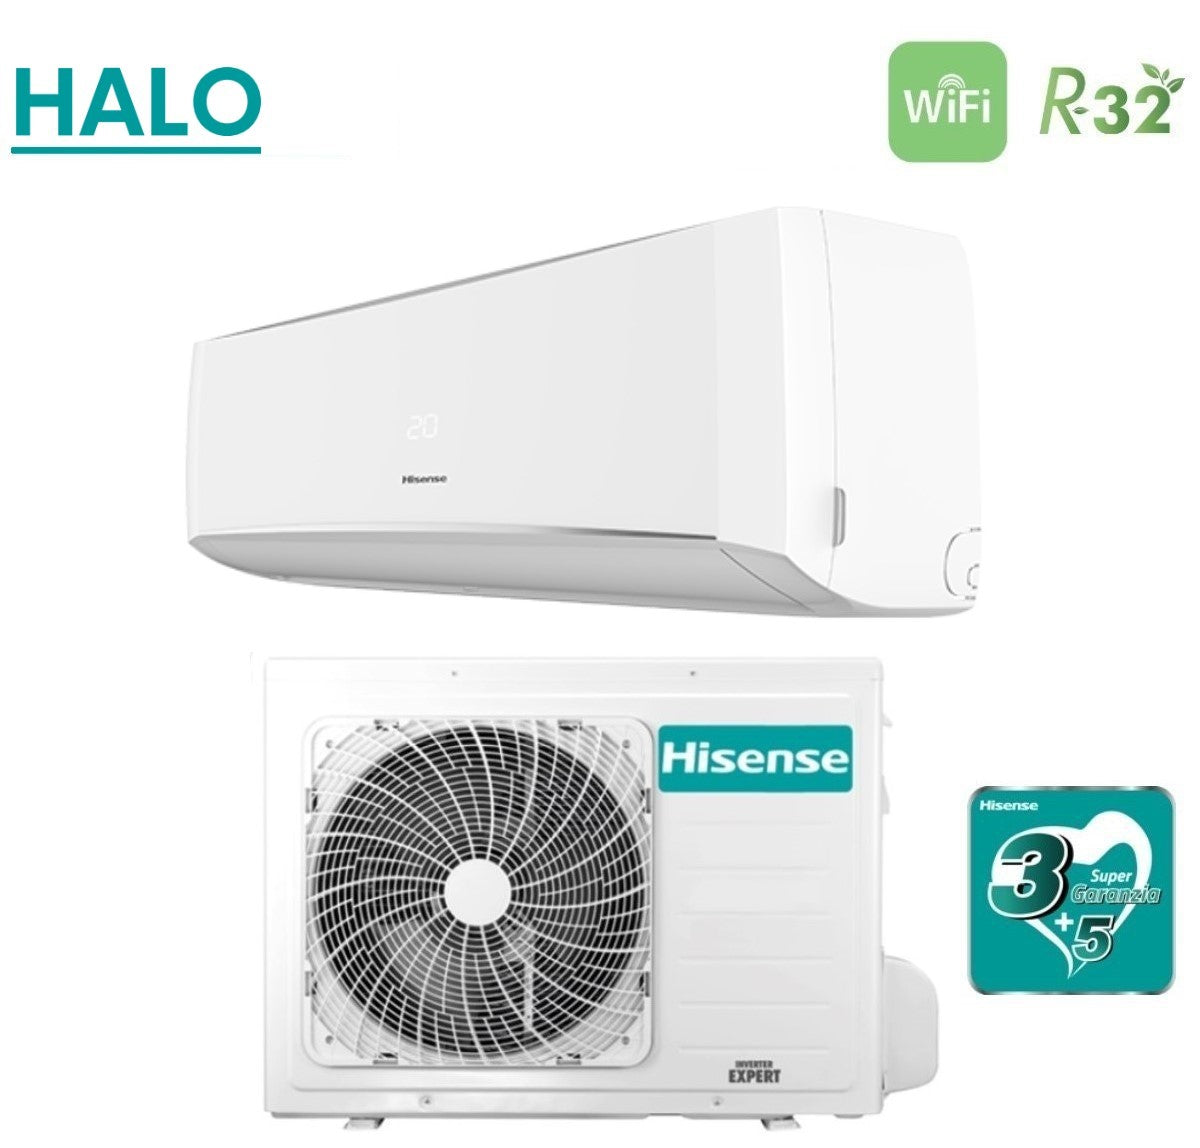 immagine-3-hisense-climatizzatore-condizionatore-hisense-inverter-serie-halo-12000-btu-cbmr1205g-cbmr1205w-r-32-wi-fi-optional-aa